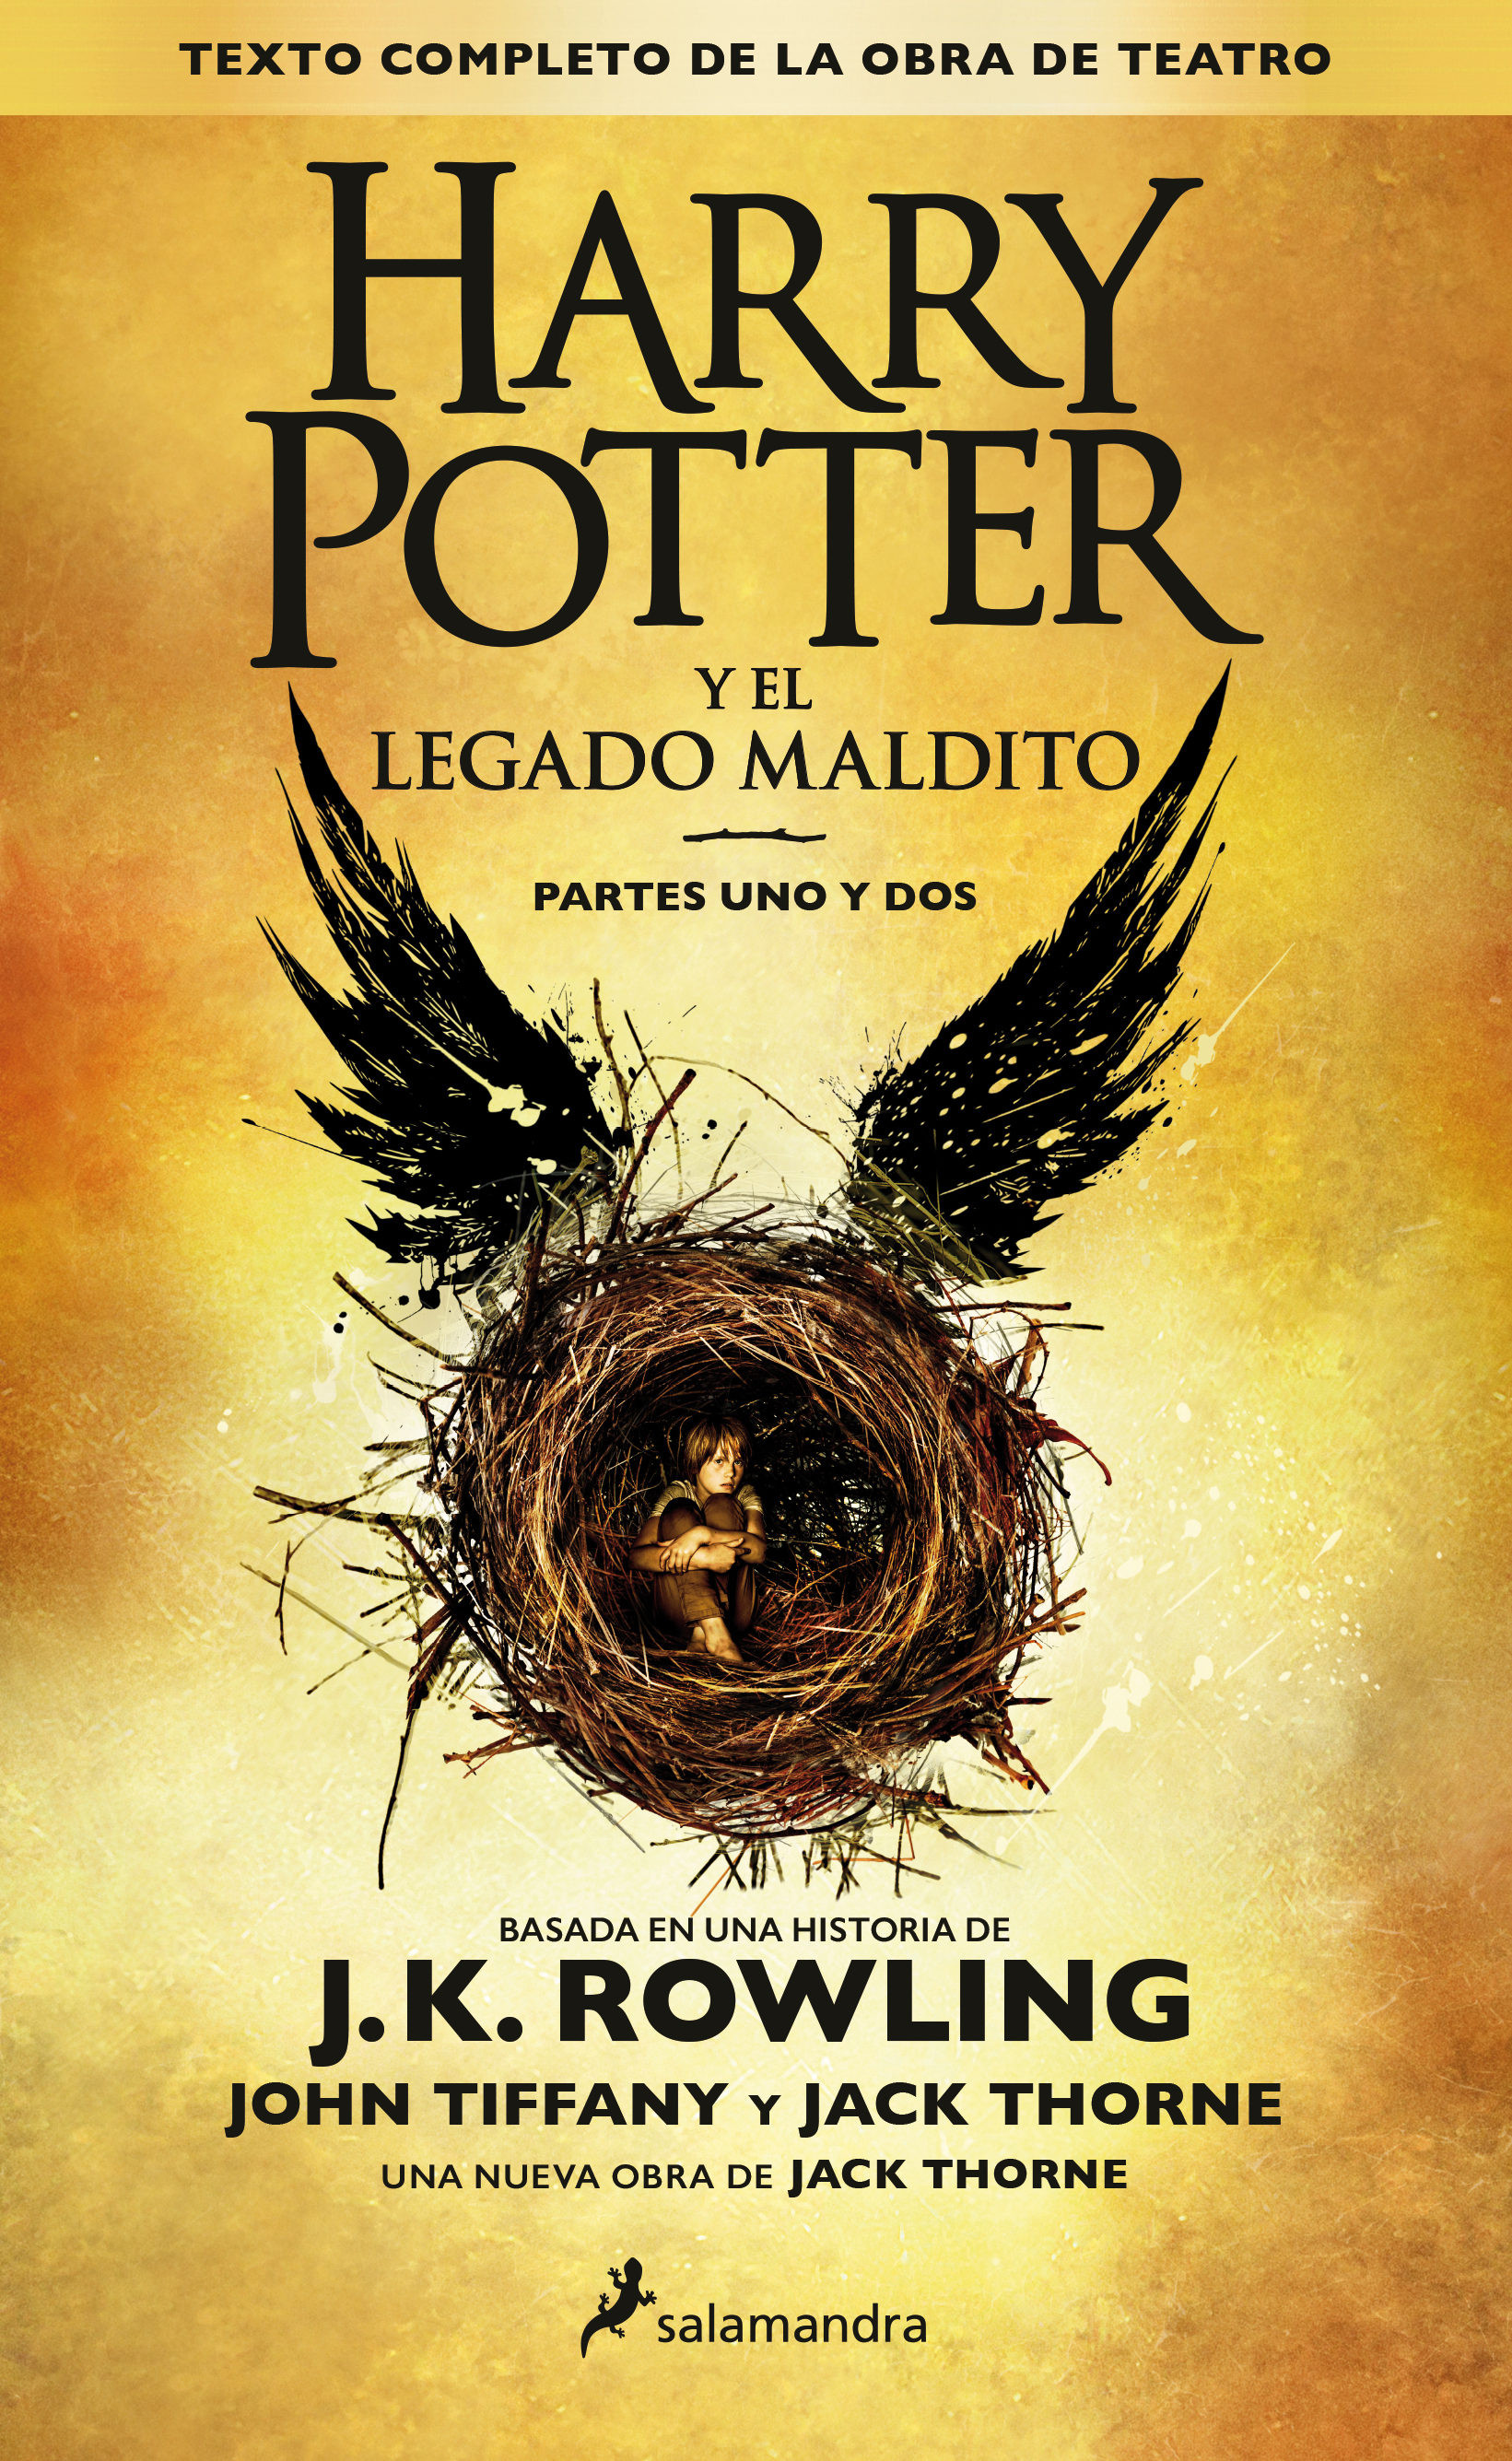 Imagen Harry Potter y el Legado Maldito. J.K. Rowling